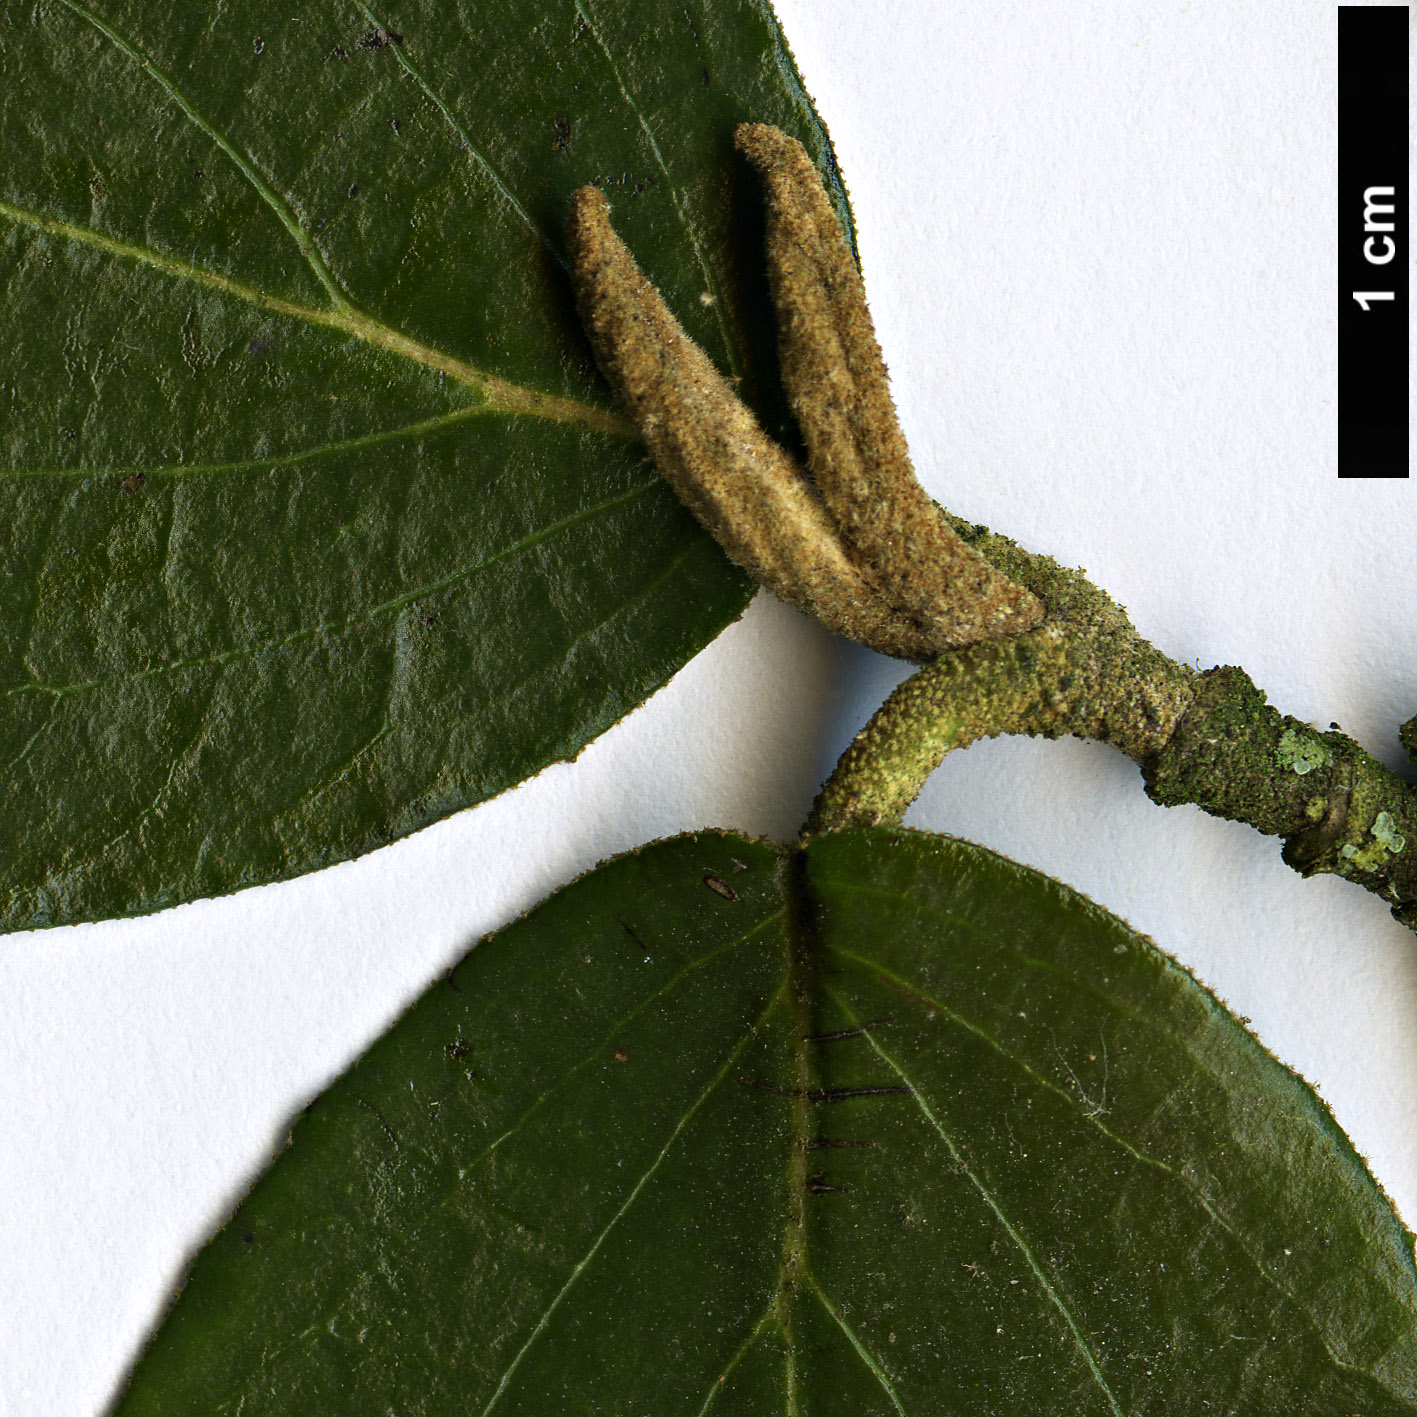 High resolution image: Family: Adoxaceae - Genus: Viburnum - Taxon: ×burkwoodii (V.carlesii × V.utile)